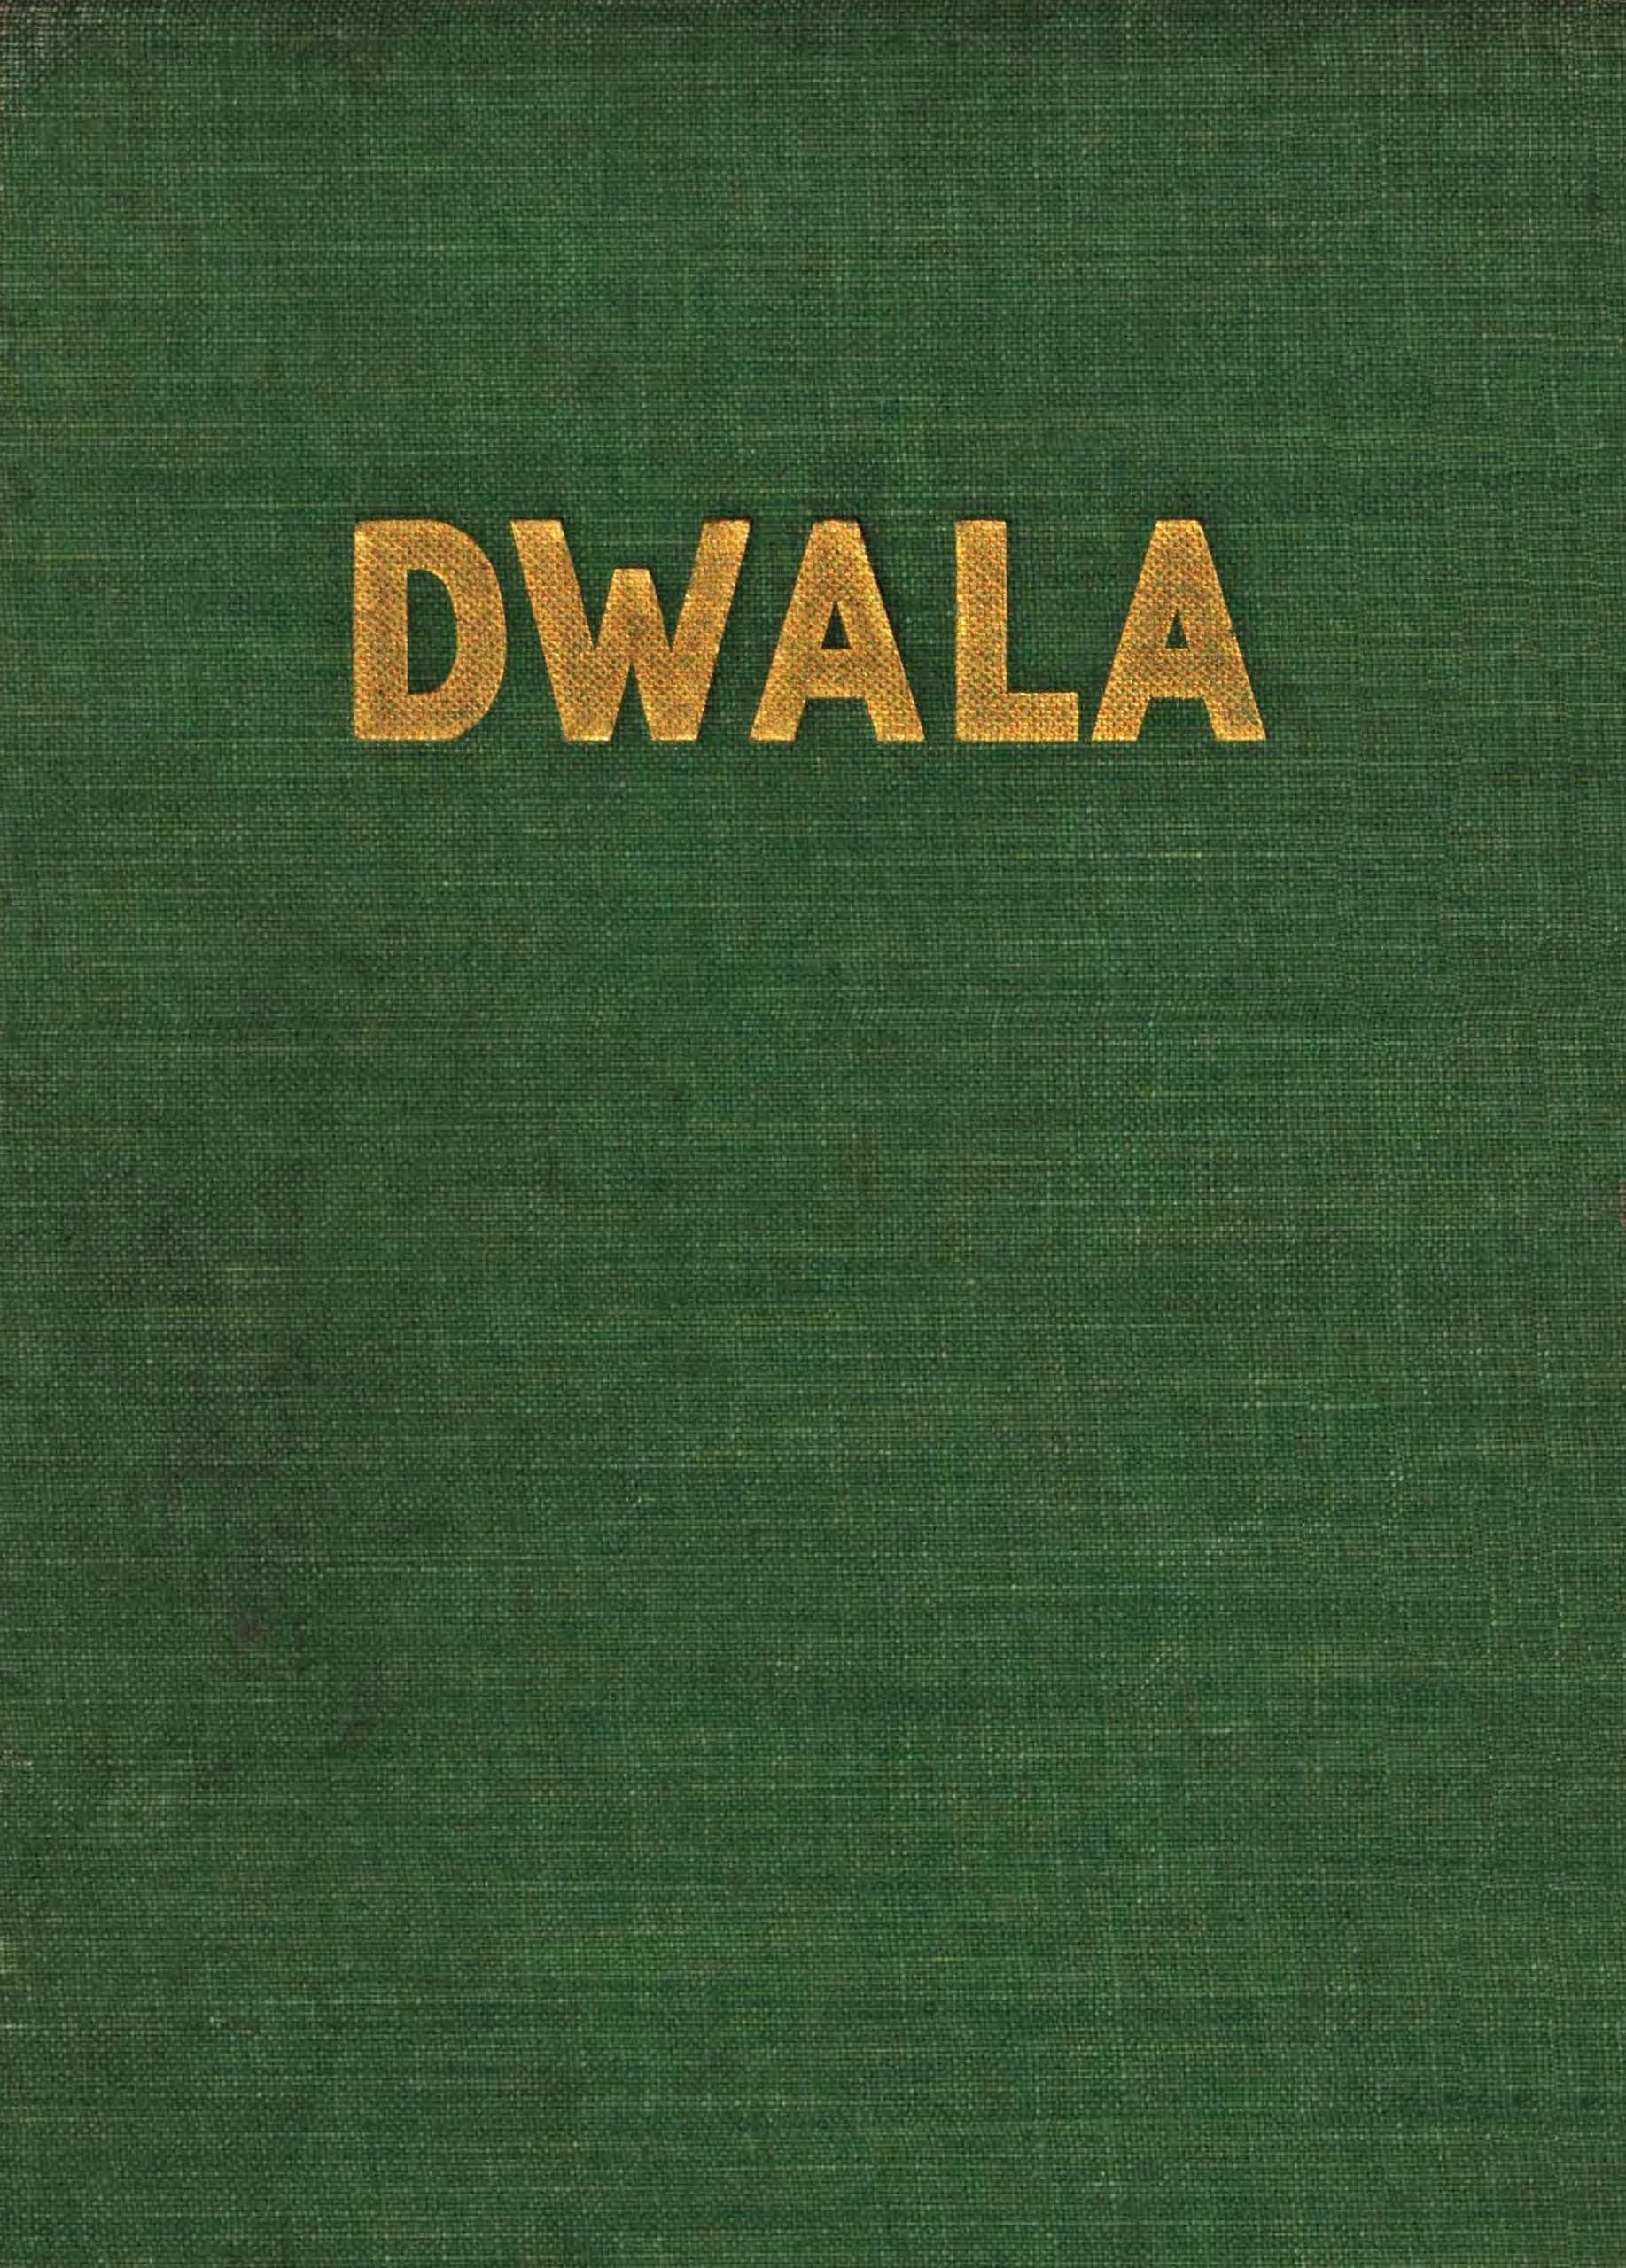 Dwala: A romance